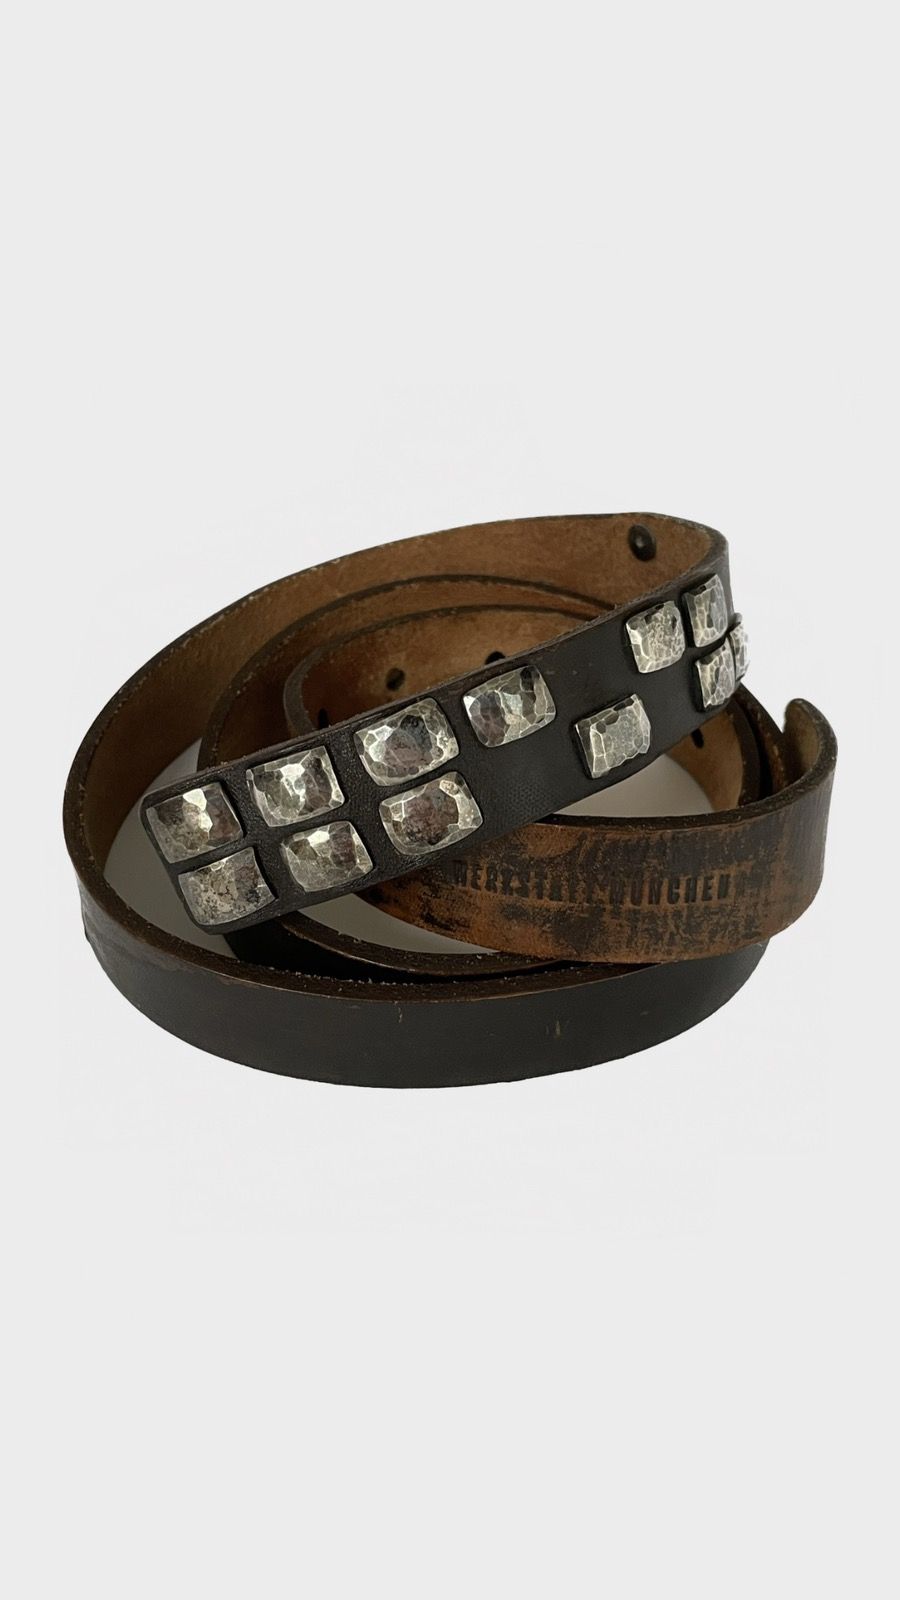 Werkstatt Munchen Studded Brown Leather Belt | Grailed